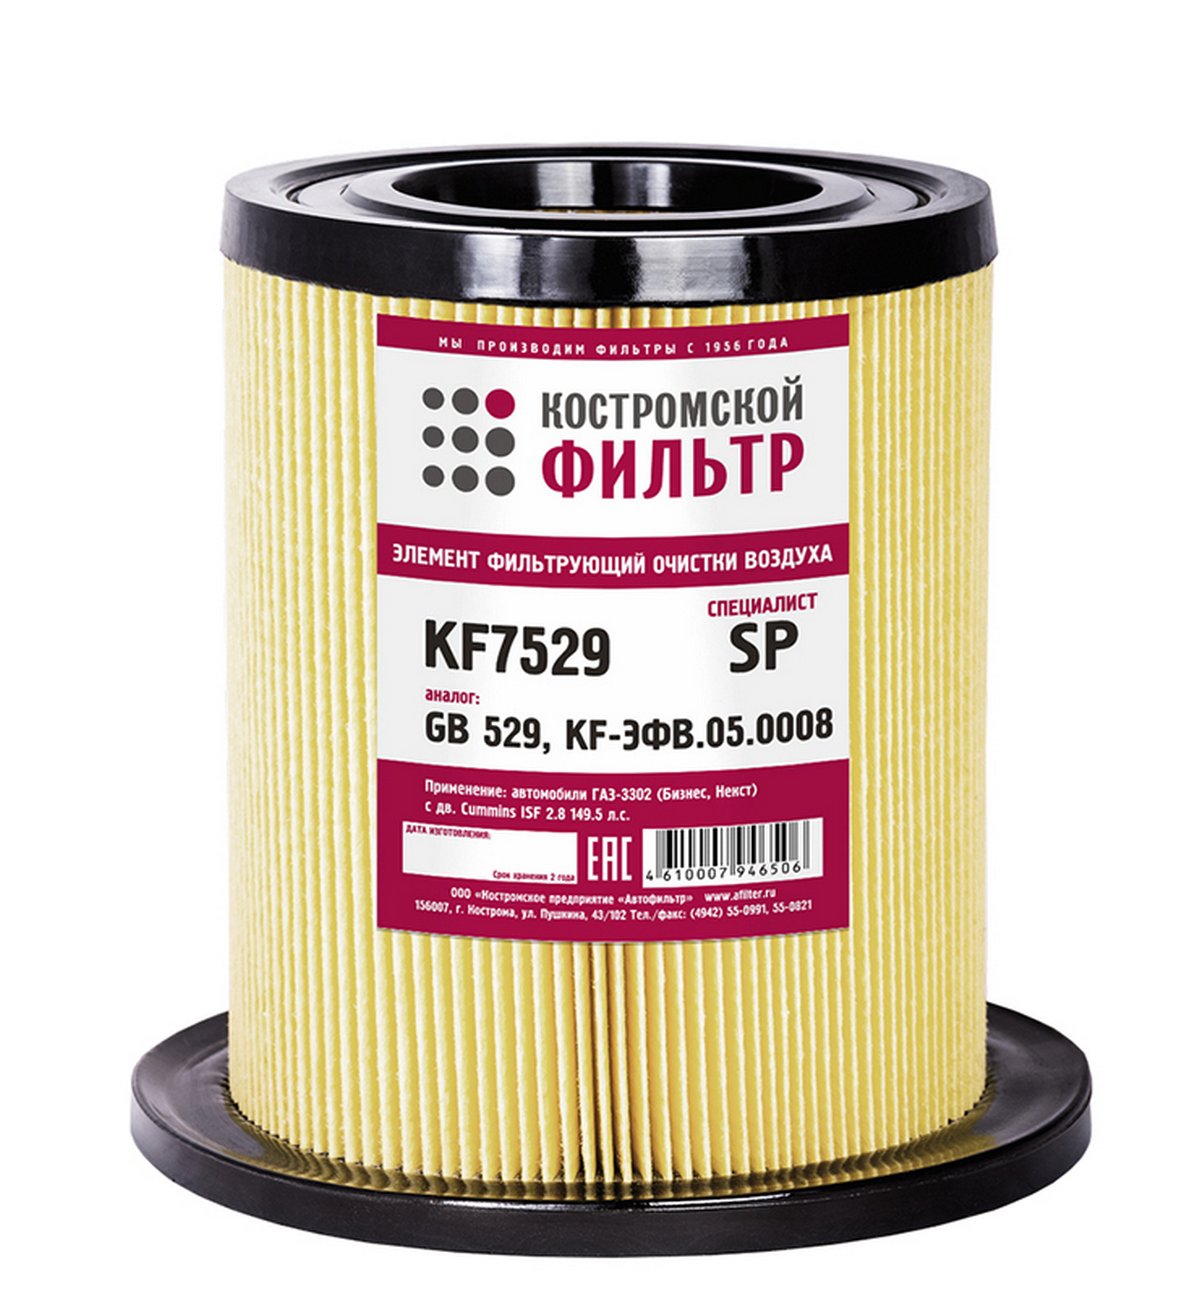 KF7529 SP Элемент фильтрующий очистки воздуха KF7529 SP (аналог-GB-529, KF-ЭФВ.05.0008) Специалист  Костромской фильтр